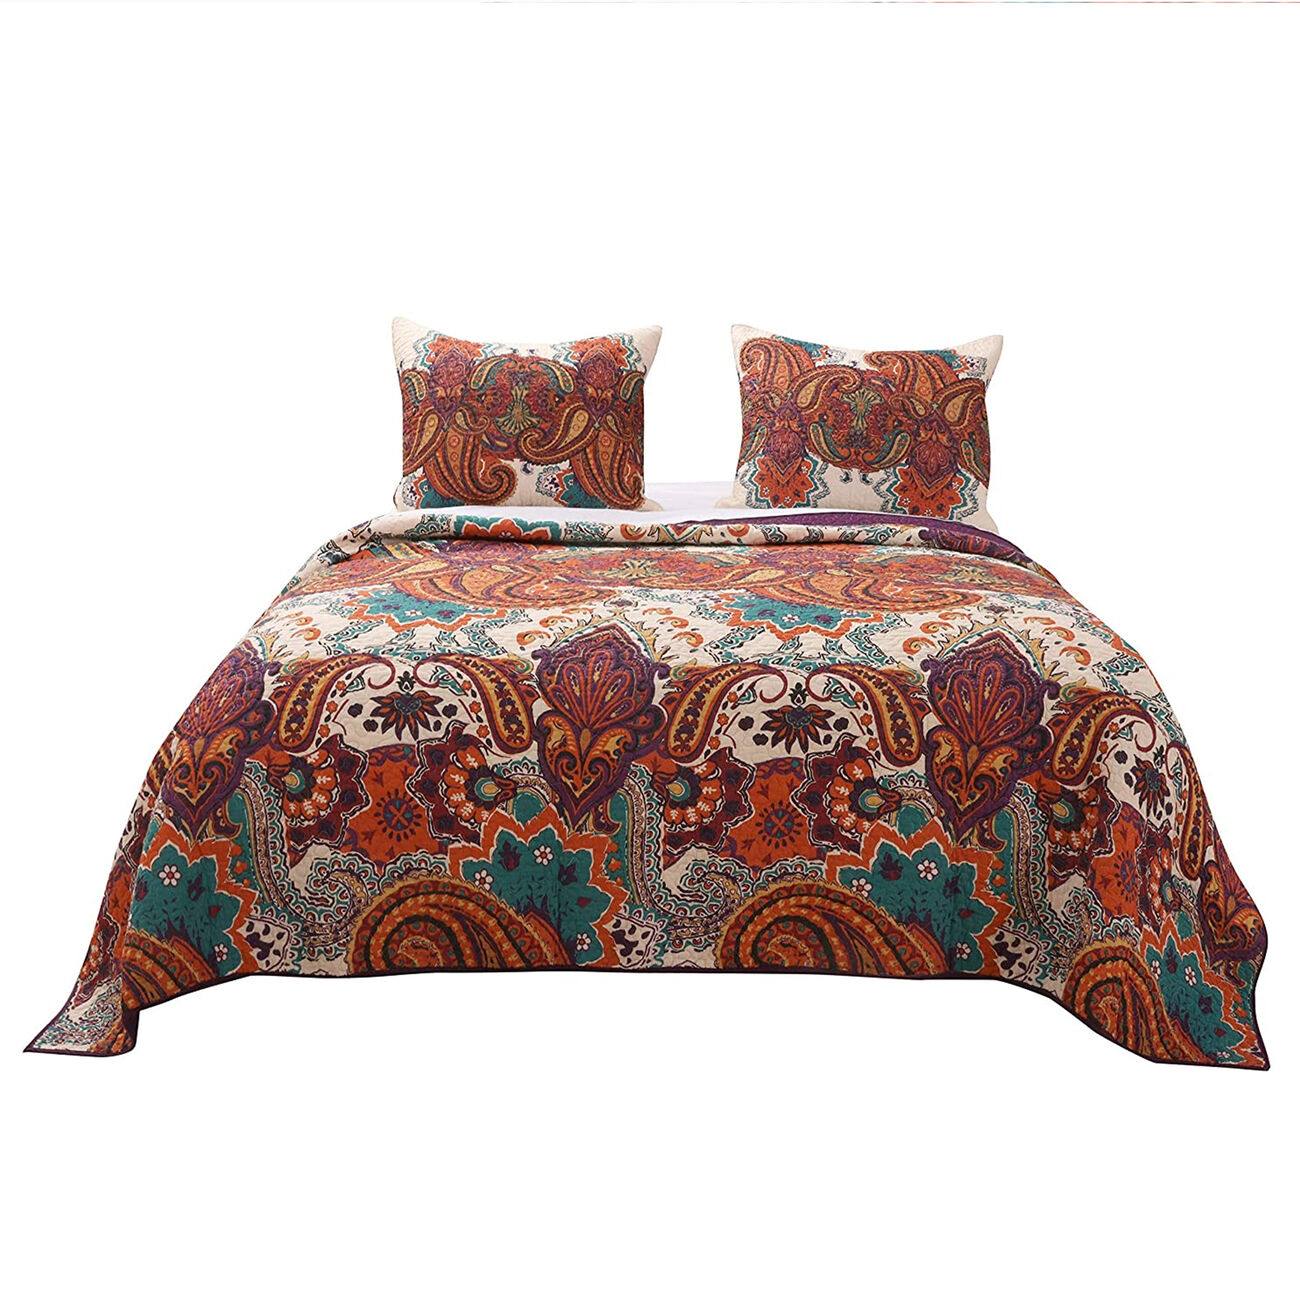 2 Piece Twin Size Cotton Quilt Set with Jacobean Print, Multicolor - BM223396